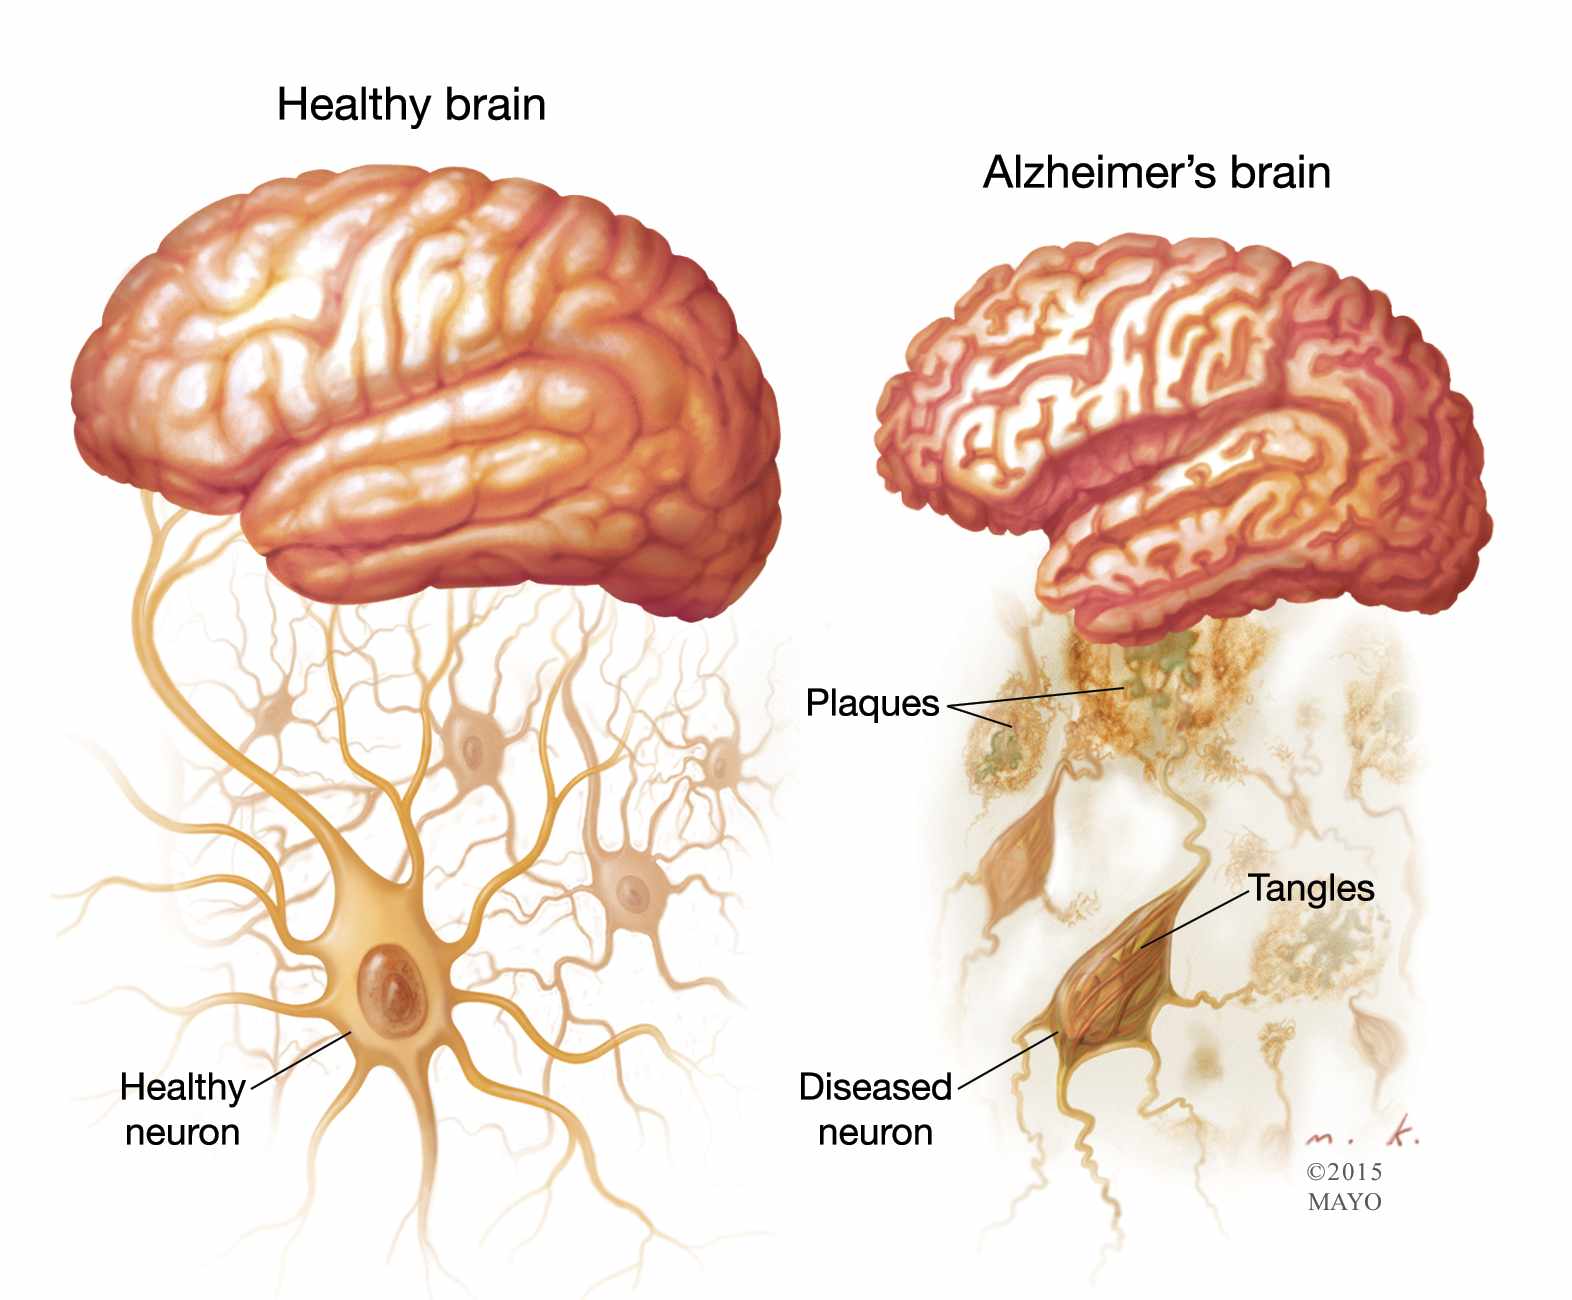 Μια νέα προσέγγιση για την εύρεση θεραπειών του Alzheimer